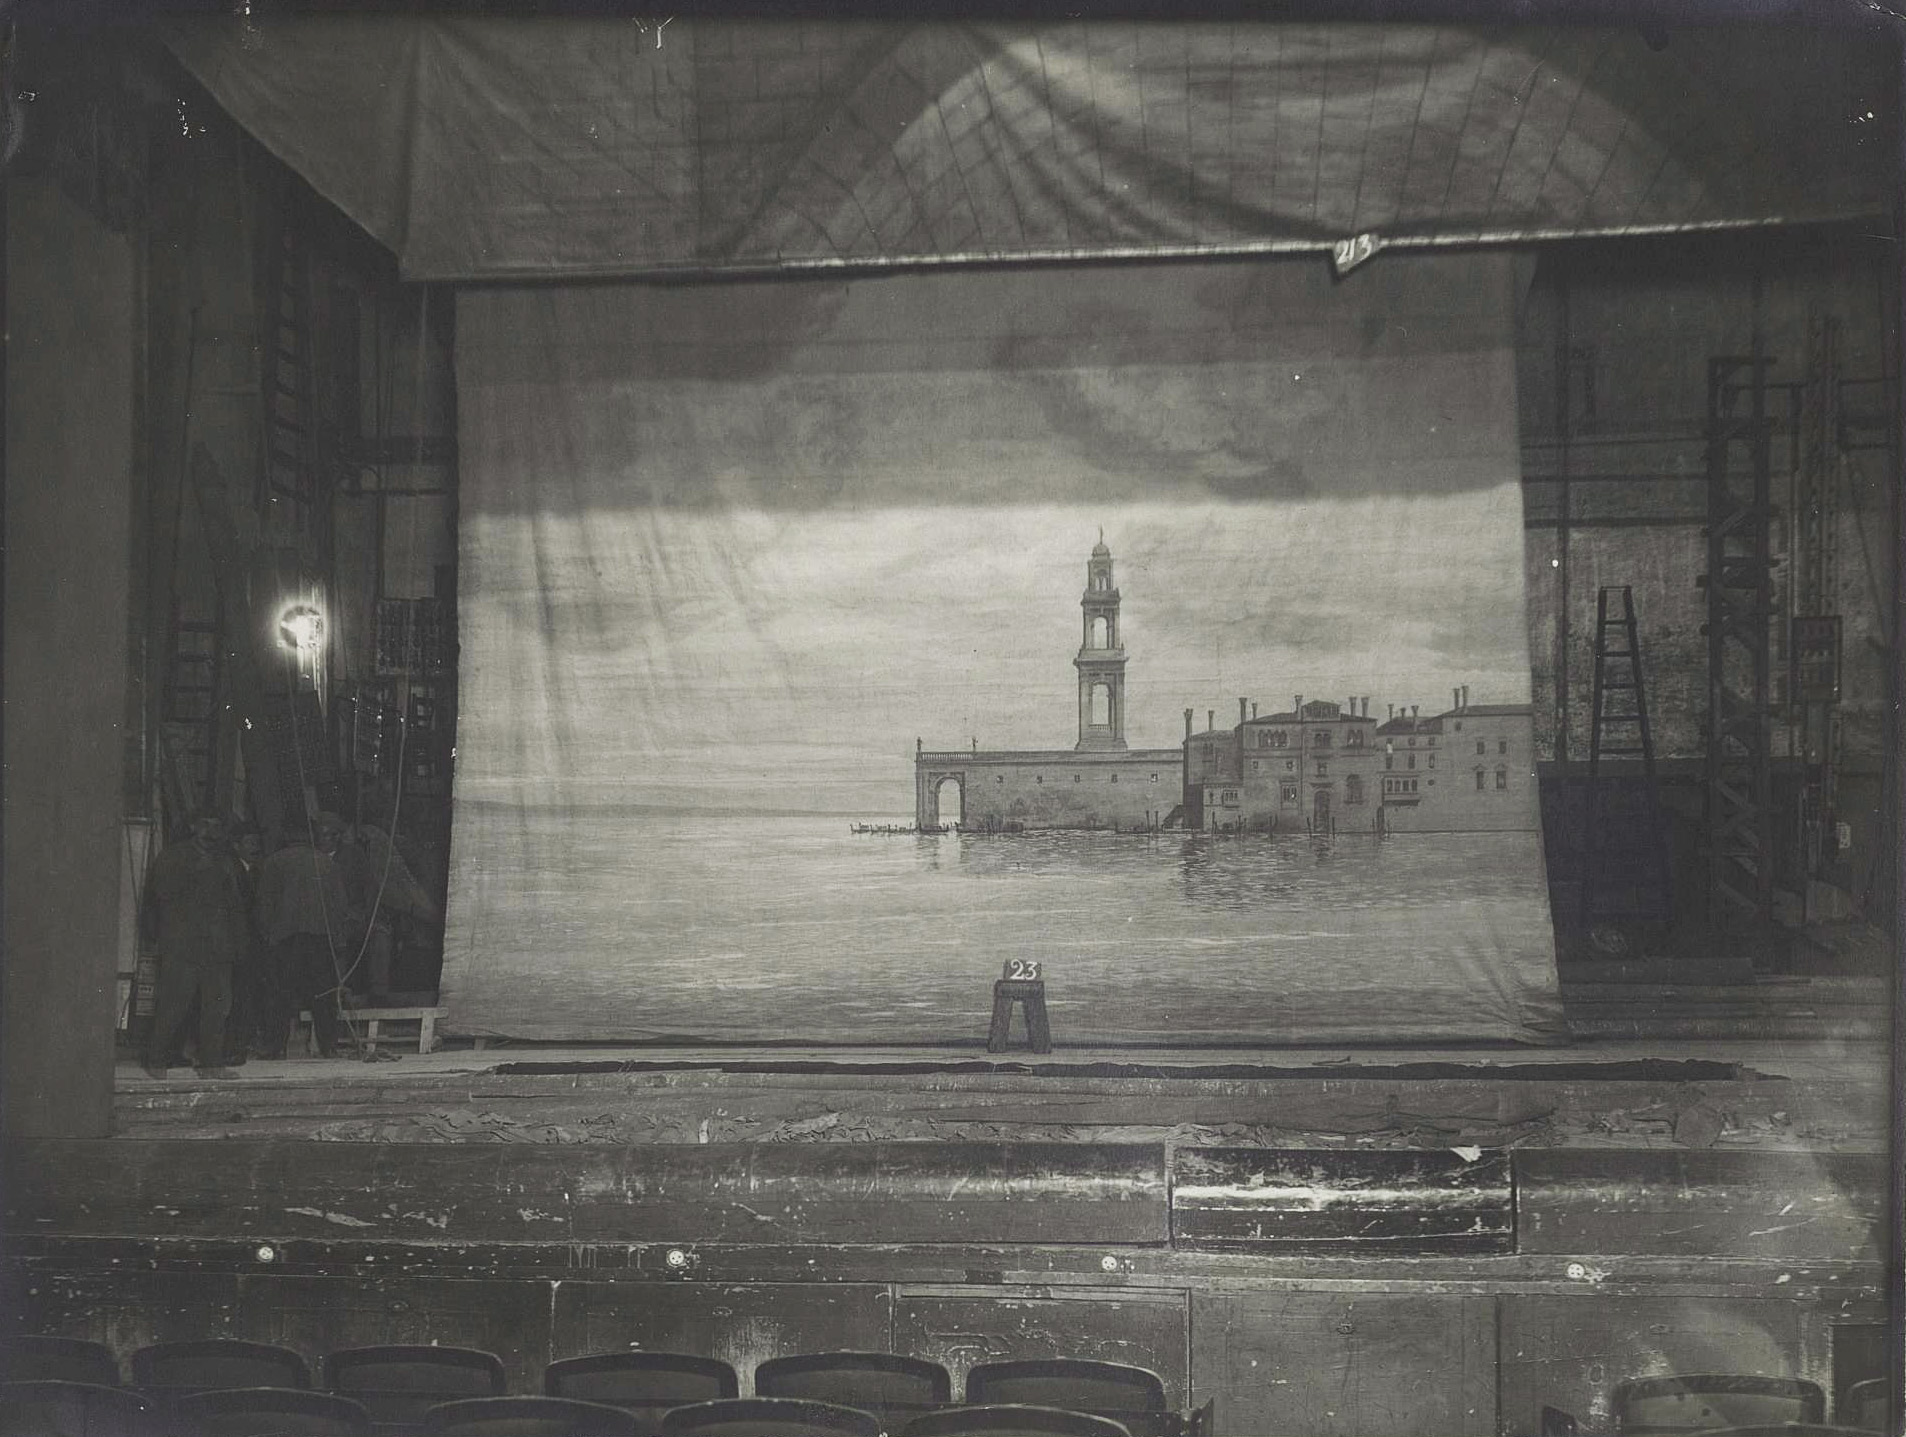 « Décor 23 », photographie de décor du Théâtre de l’Odéon, première moitié du XXe siècle. Archives nationales